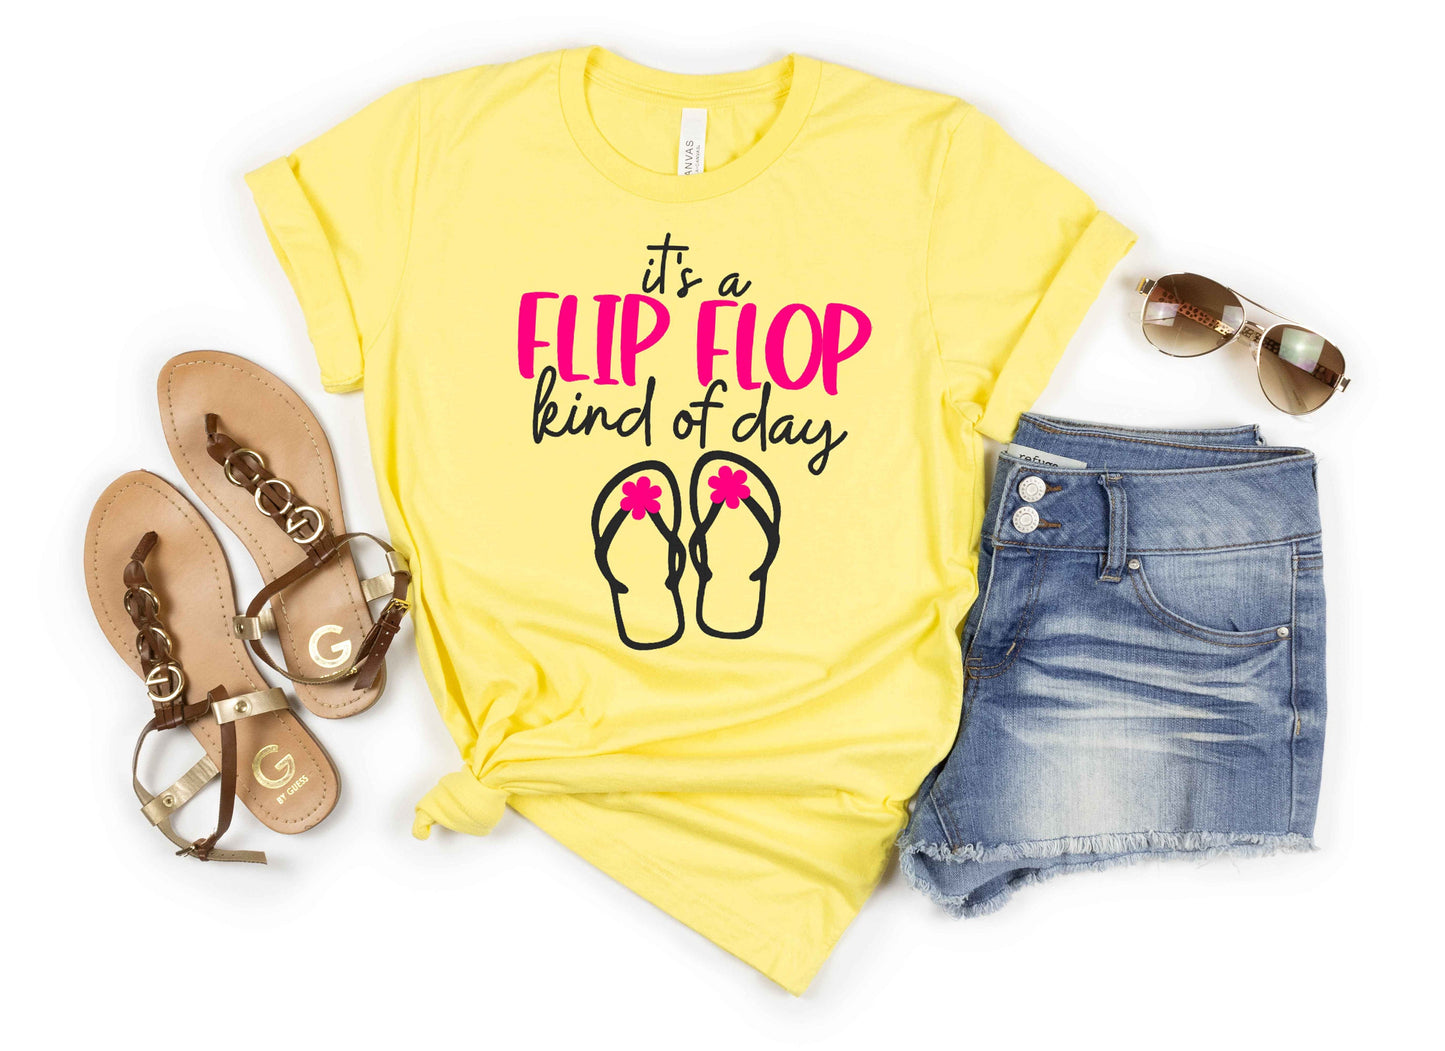 It's a Flip Flop Kind of Day short sleeve t-shirt - funny t-shirt - beach day shirt - summer shirt